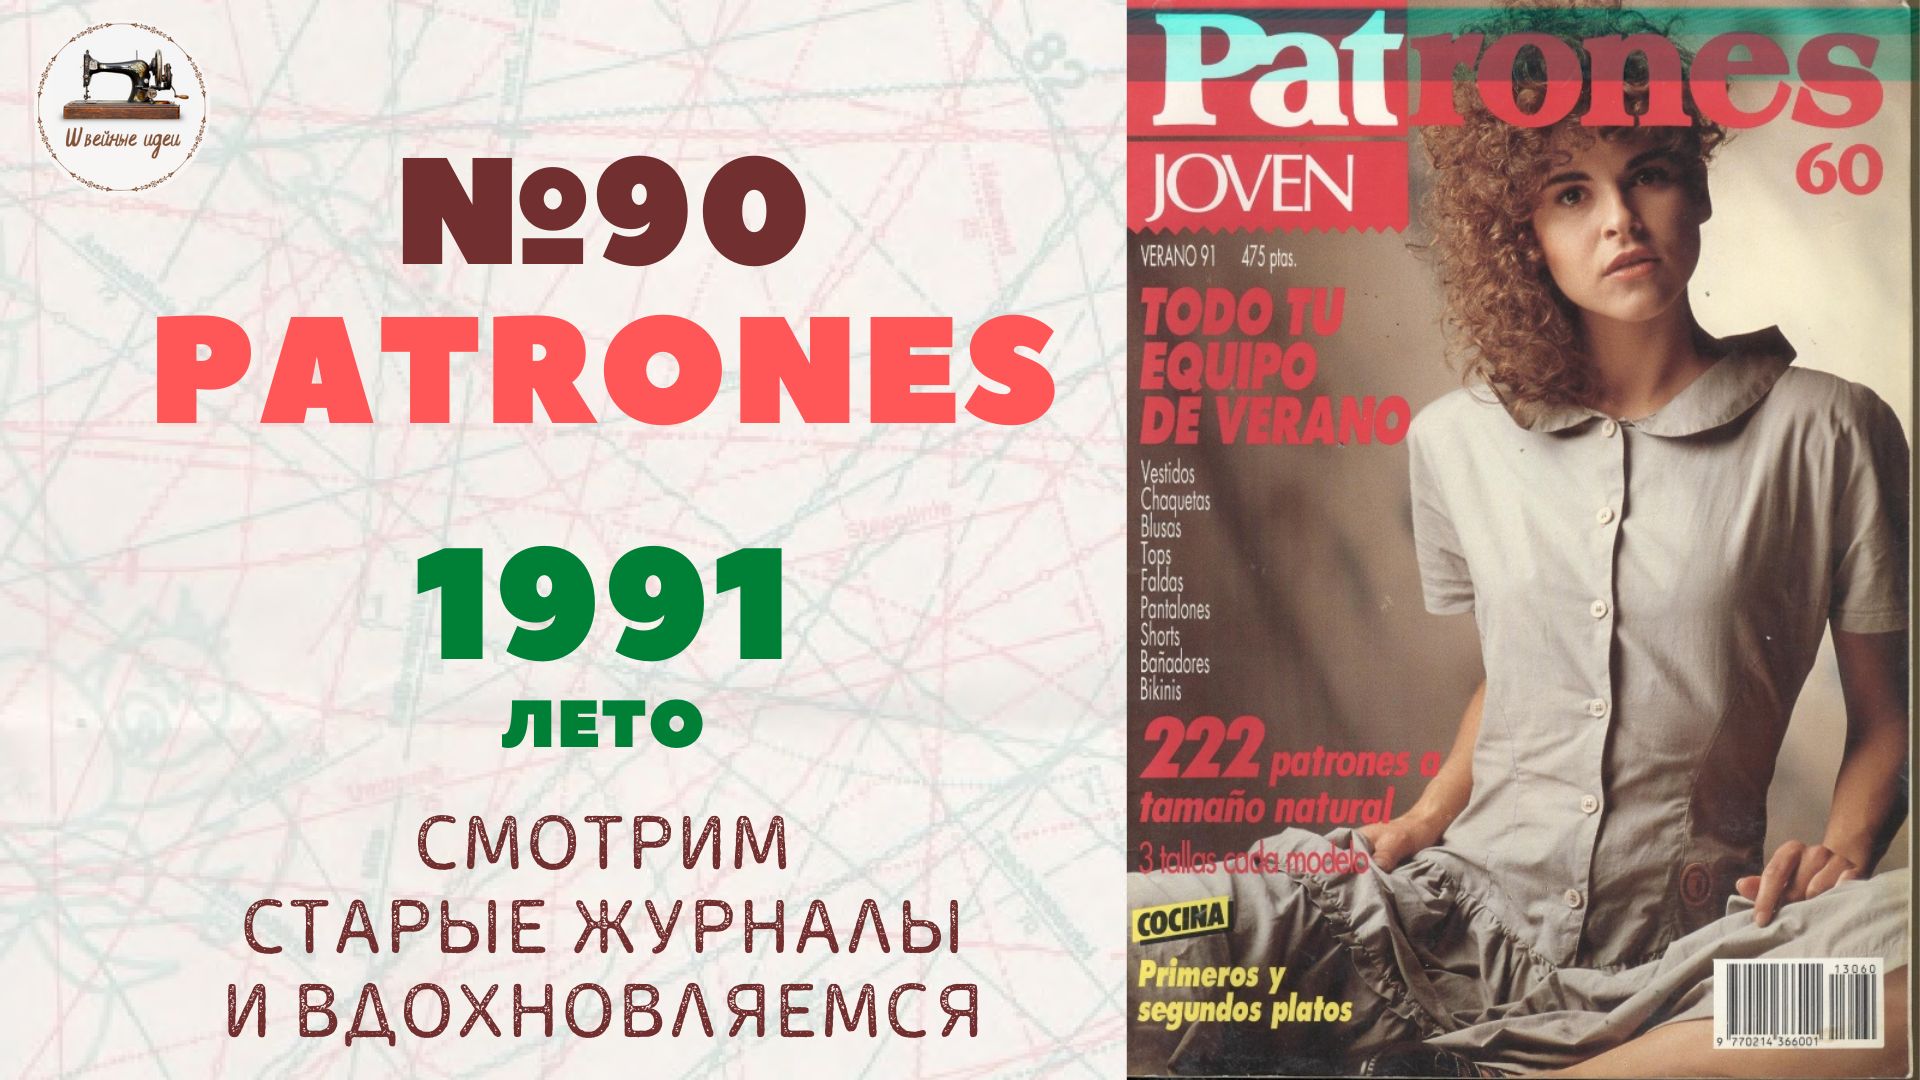 Мода 90-х. PATRONES 90/1991 лето/ Line Drawings/Технические рисунки